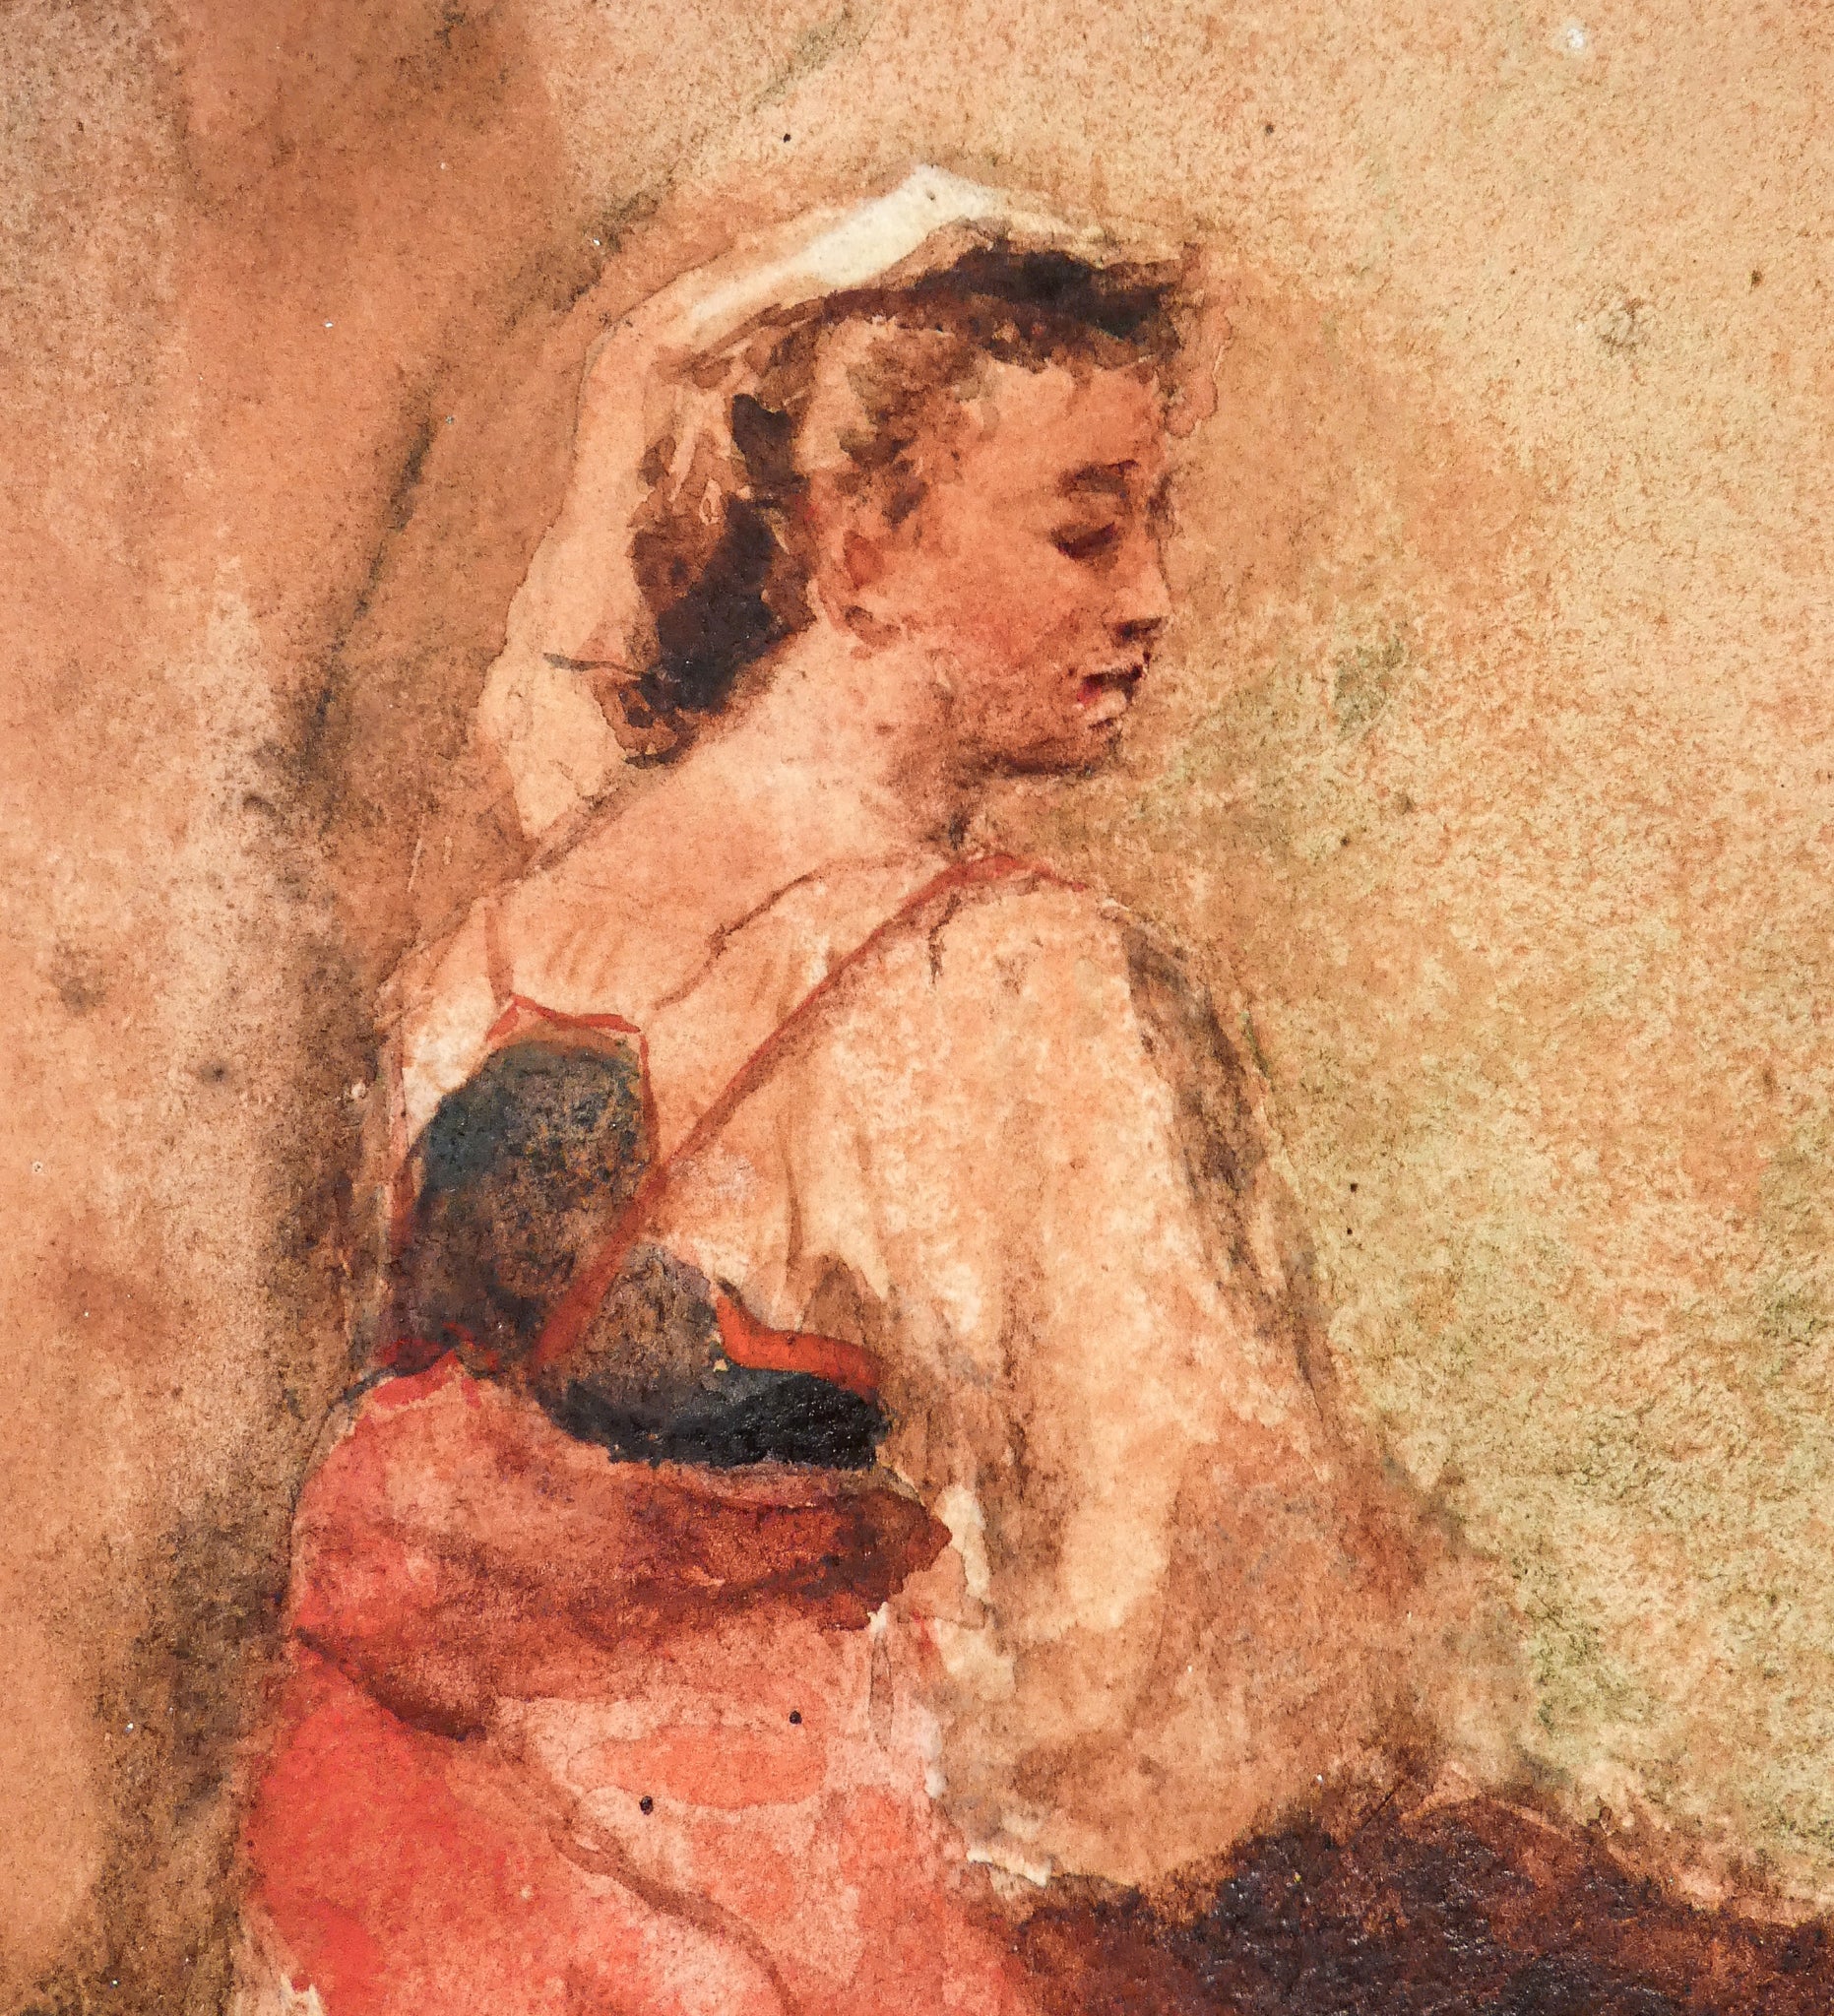 bozzetto giuseppe bertini epoca 1848 quadro dipinto disegno acquarello carta